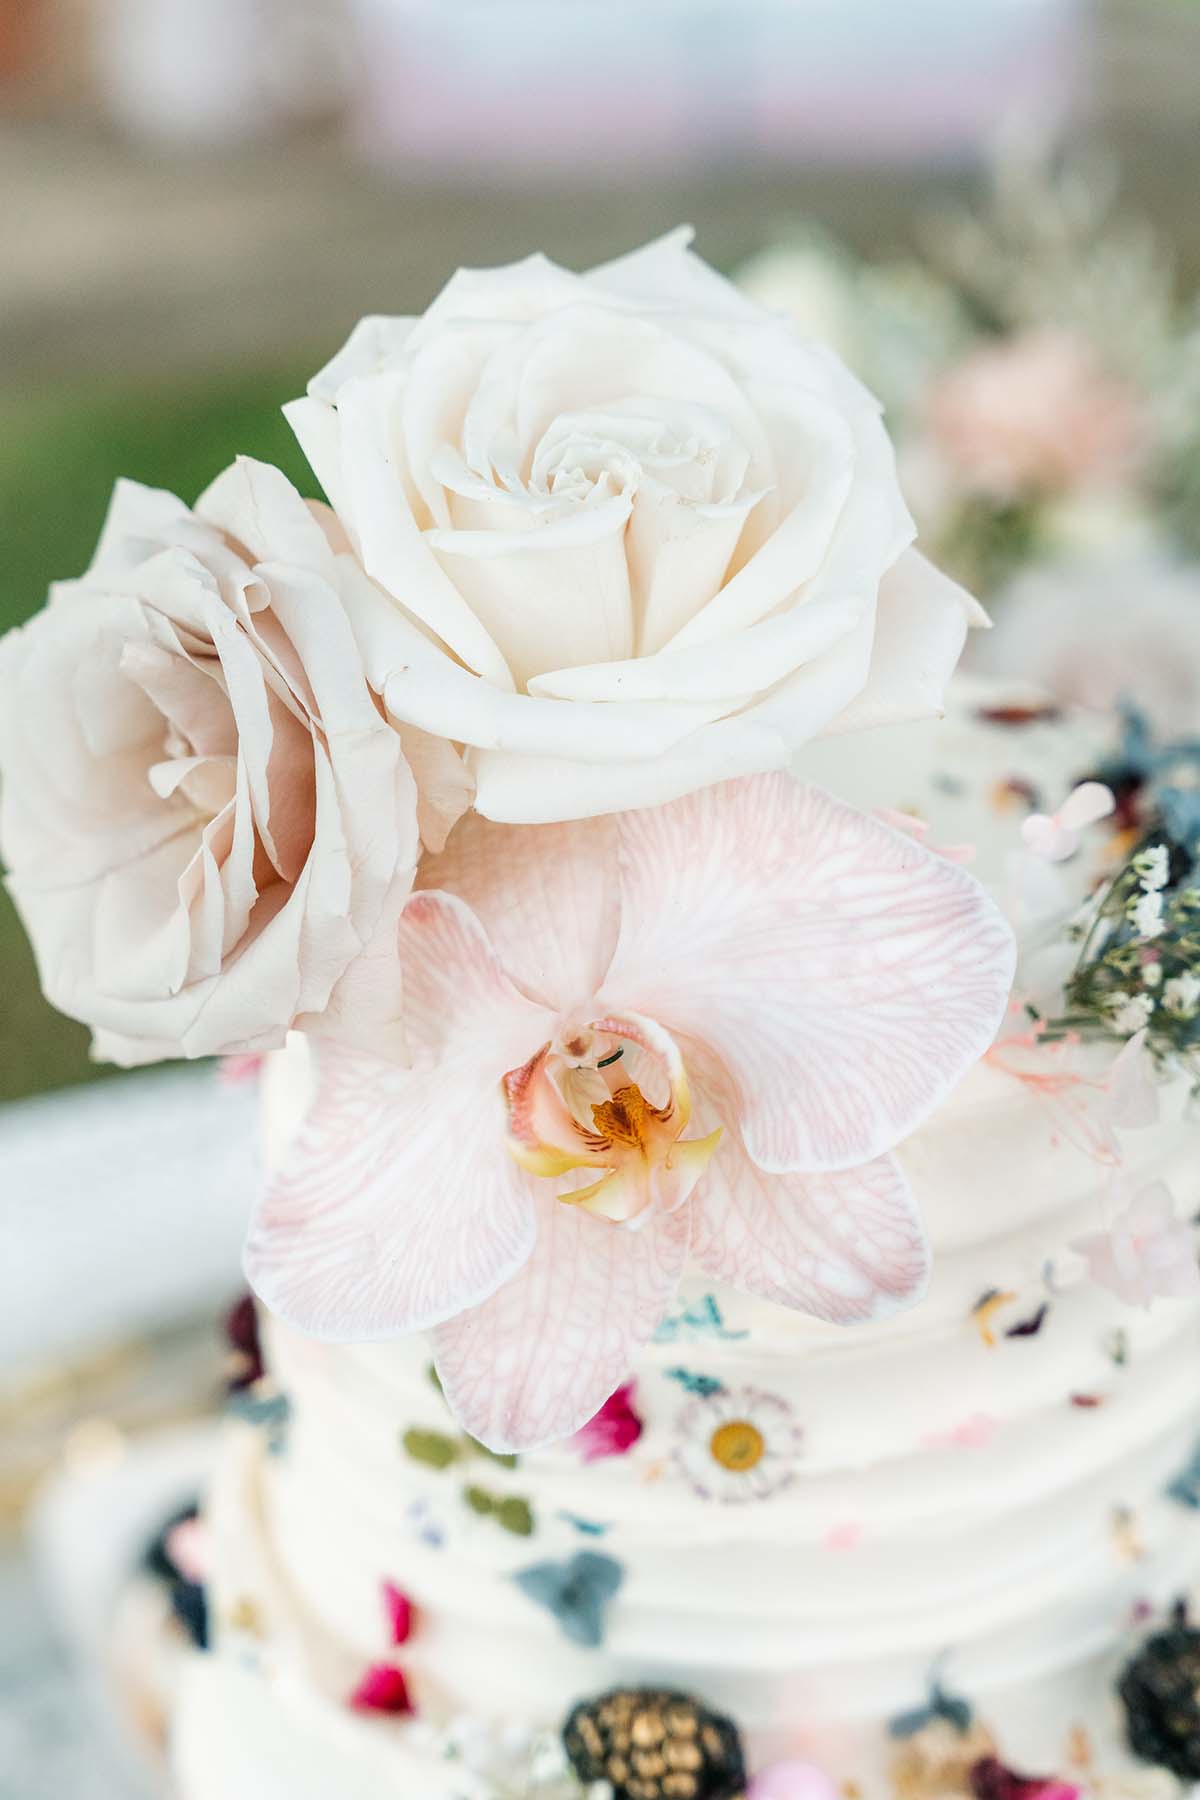 Wedding Photography - cake flower close up